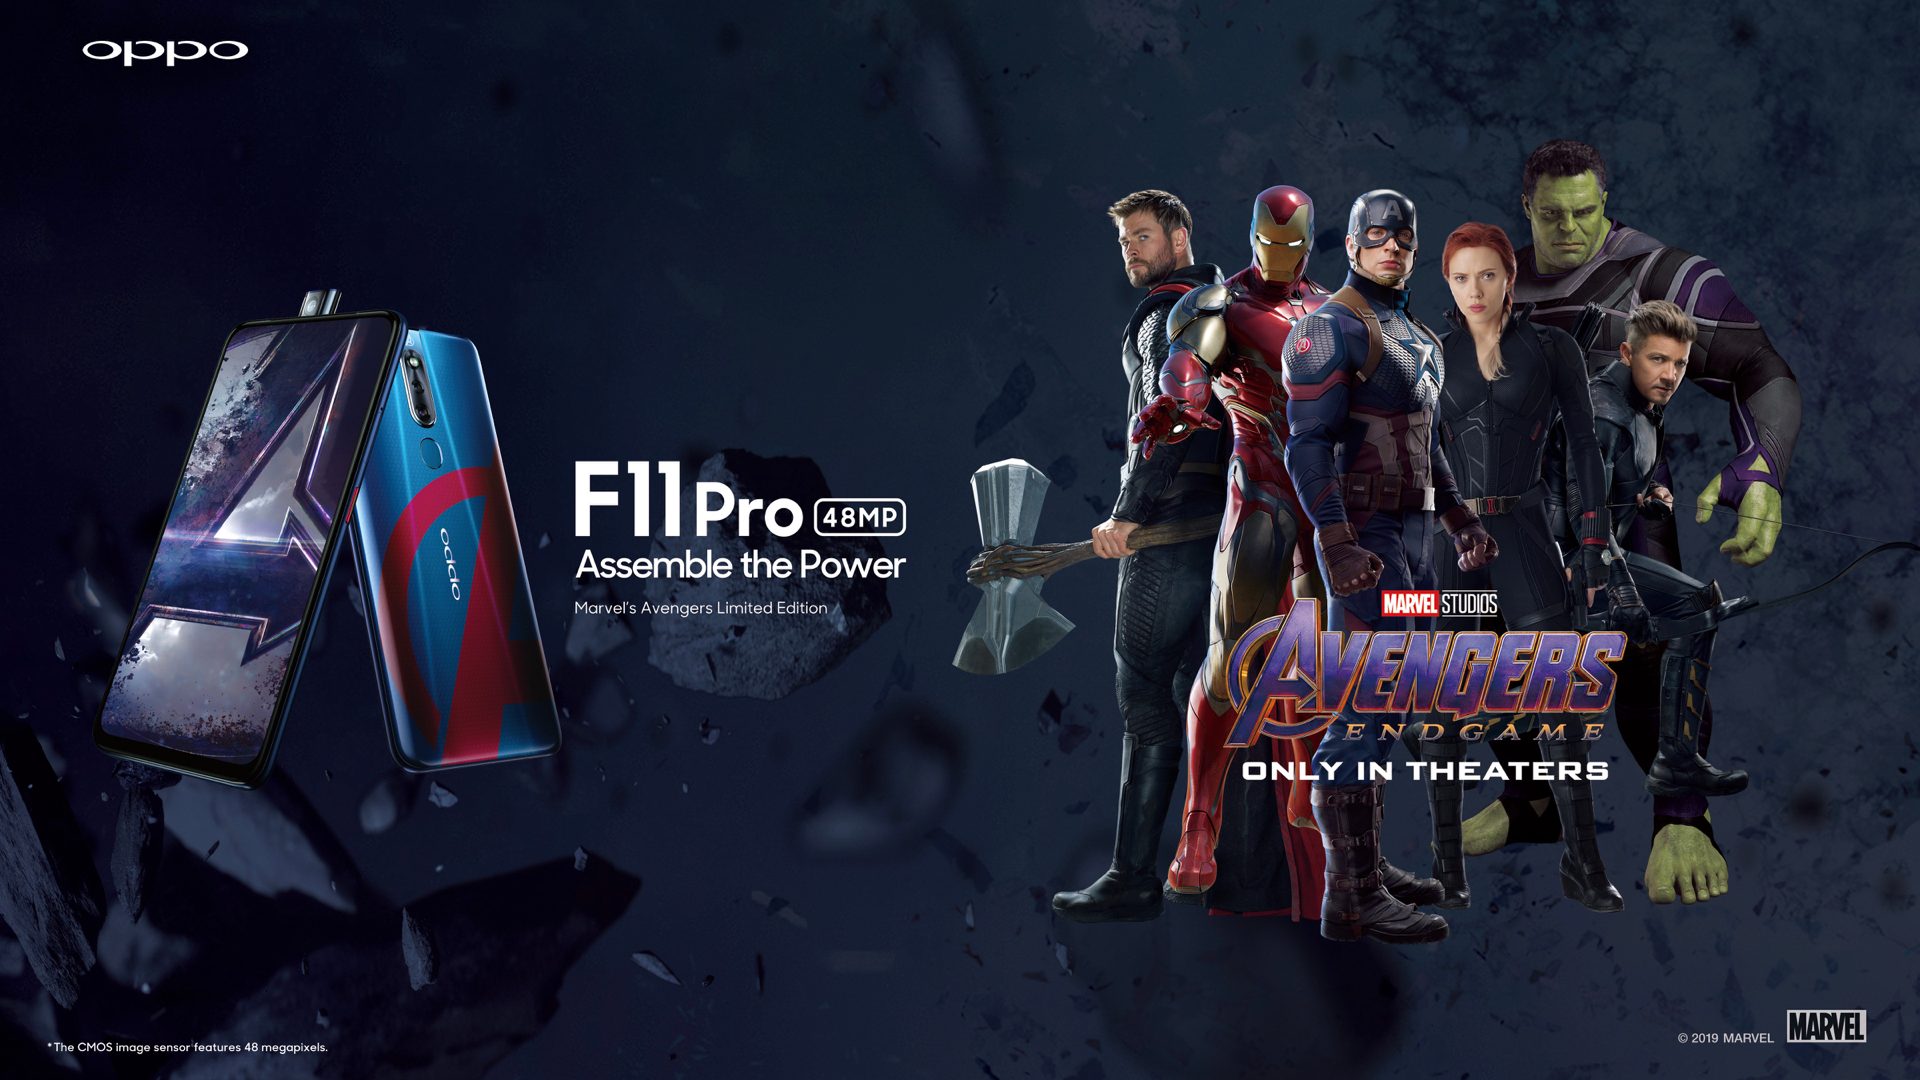 เปิดตัว OPPO F11 Pro Marvel’s Avengers Limited Edition ลายพิเศษพร้อมเพิ่มความจุเครื่อง!